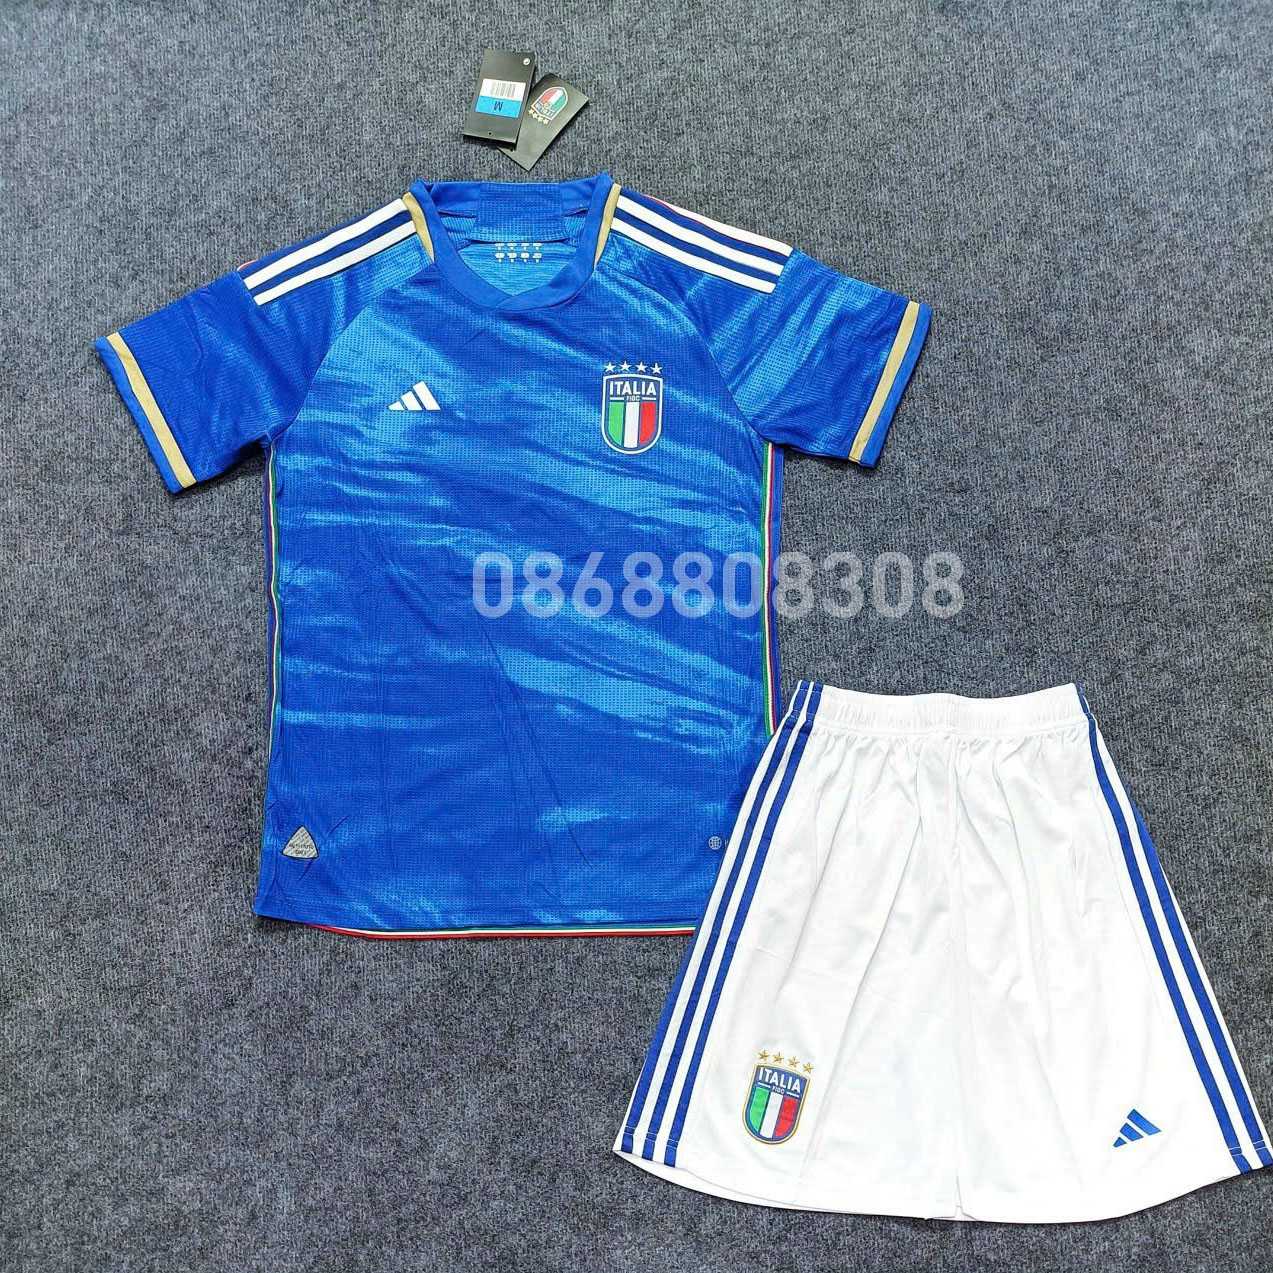 Bộ quần áo đá bóng đội tuyển quốc gia Ý Italia sân nhà 23 24 home kit màu xanh biển năm 2023 2024 logo thêu vải gai thái mặt trước